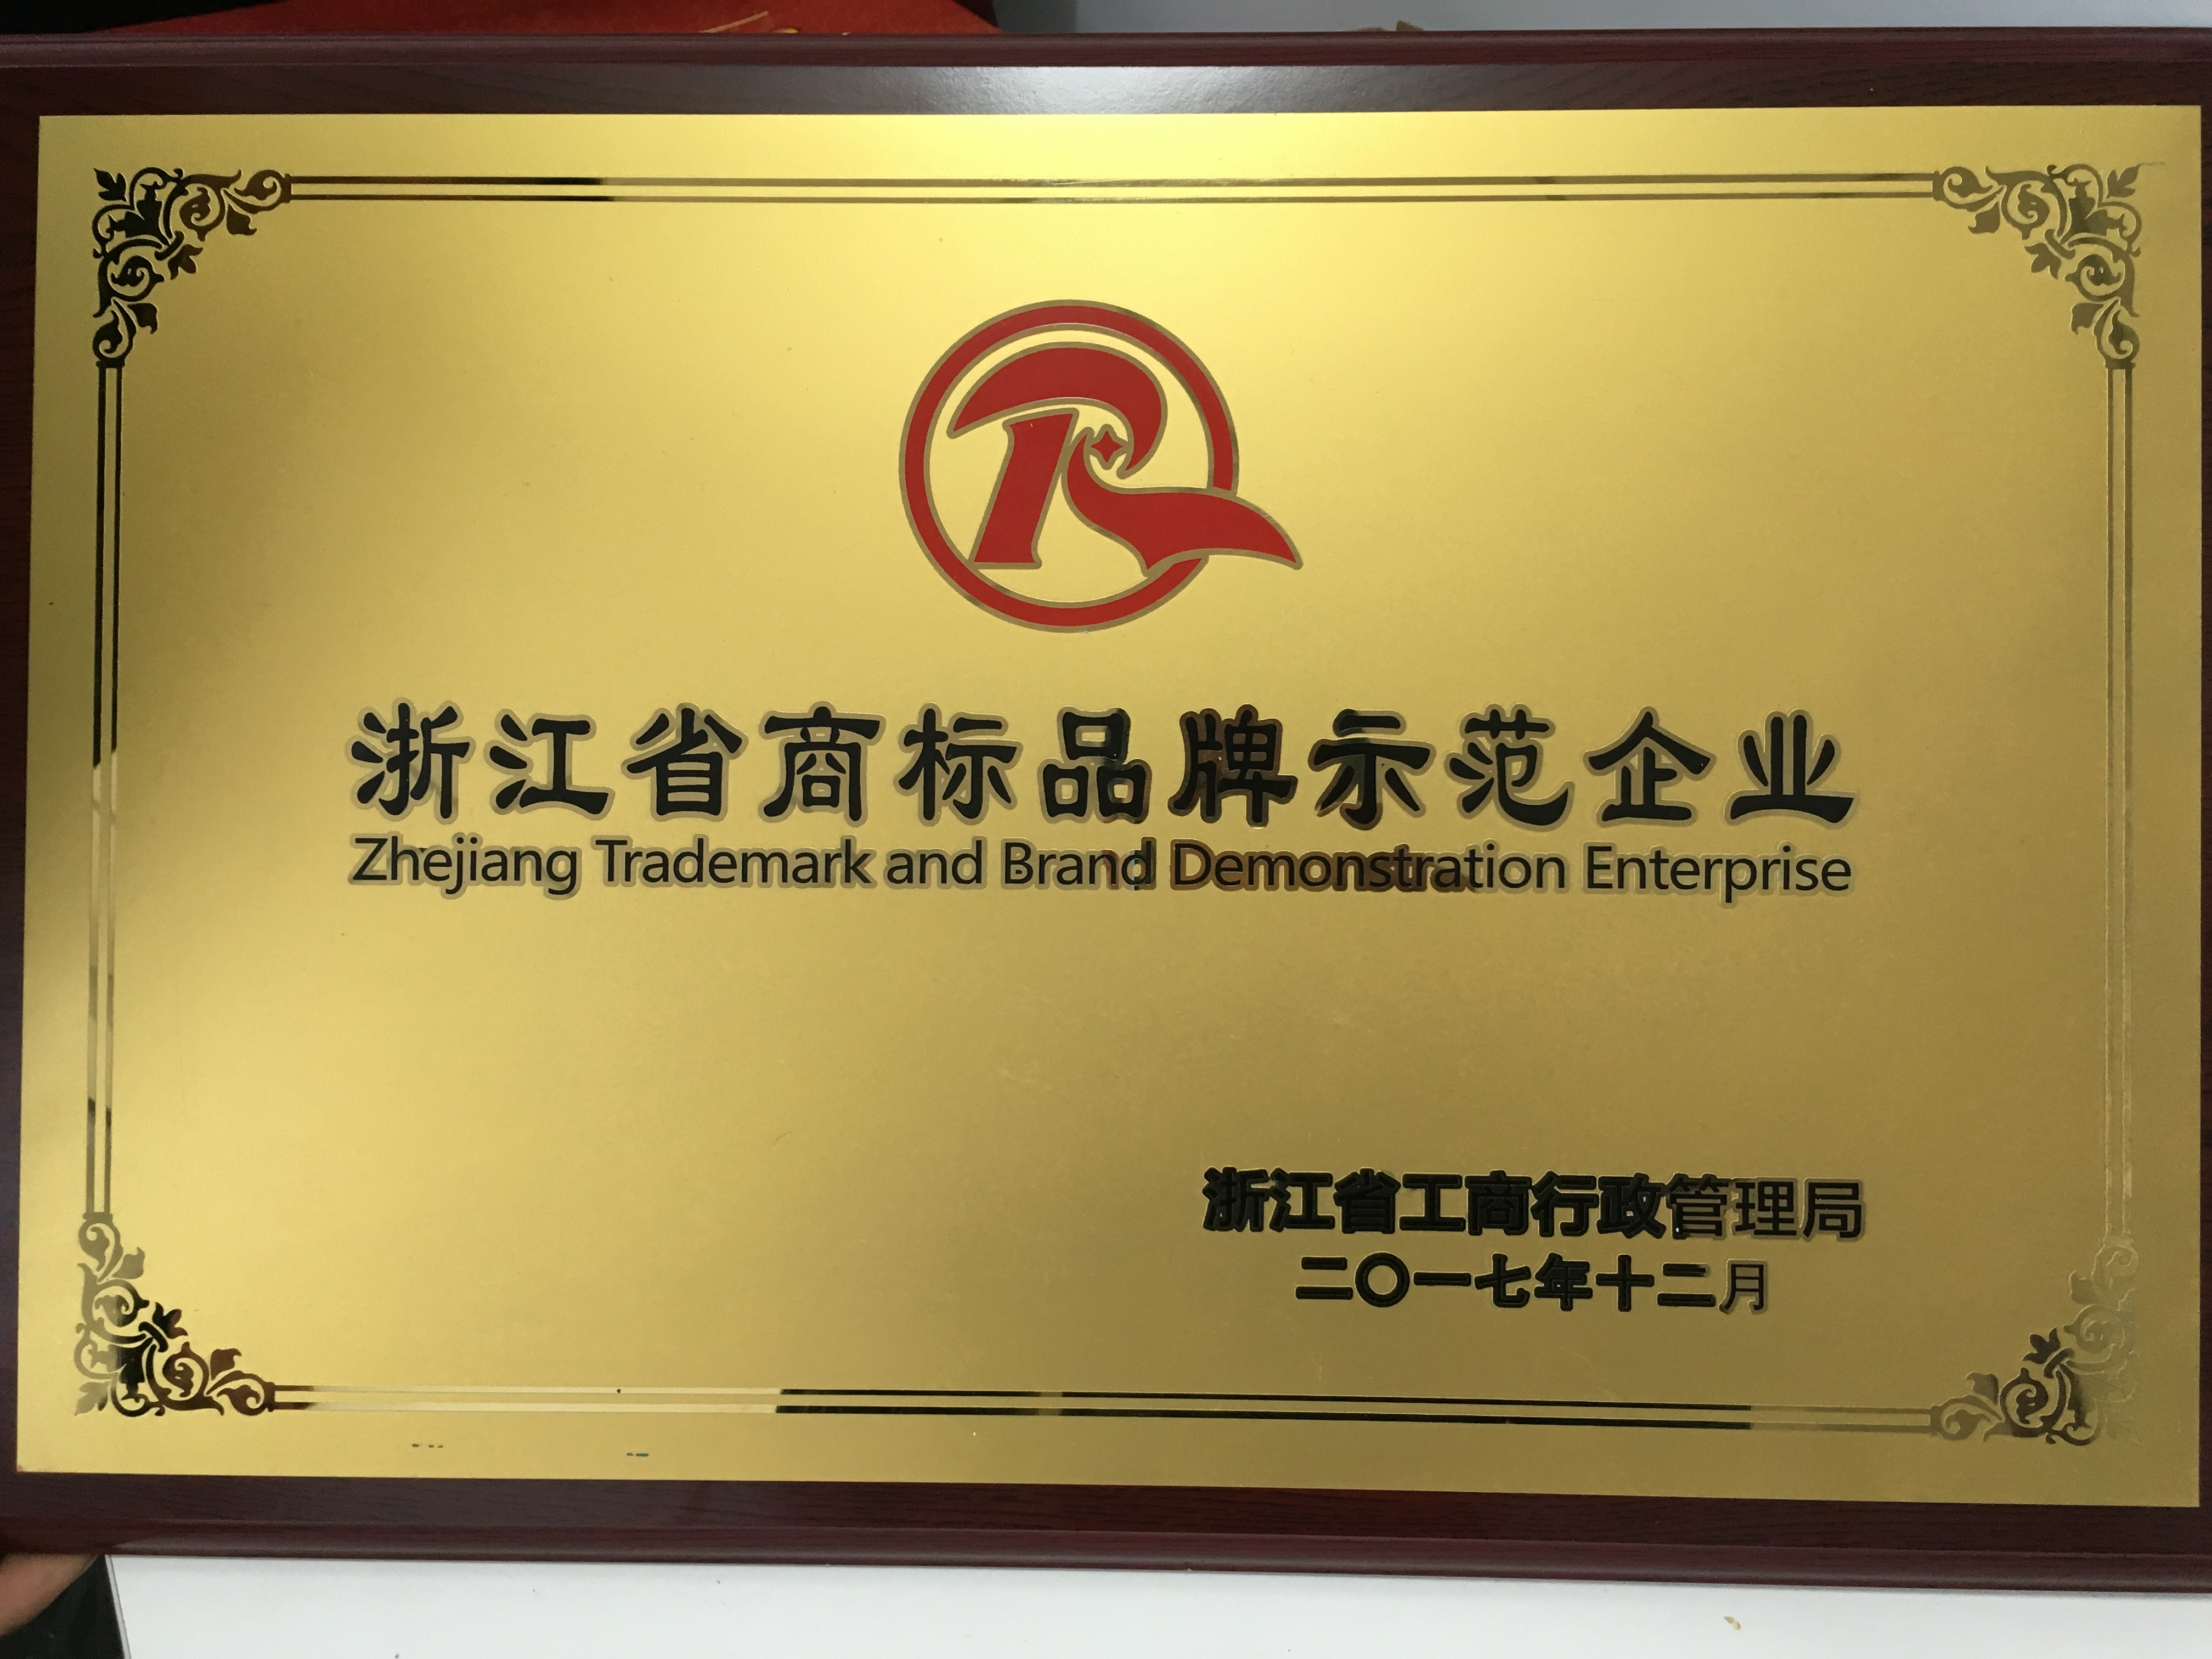 春天集团被评为 “浙江省商标品牌示范企业”和2017年度“金华市信用管理示范企业”。